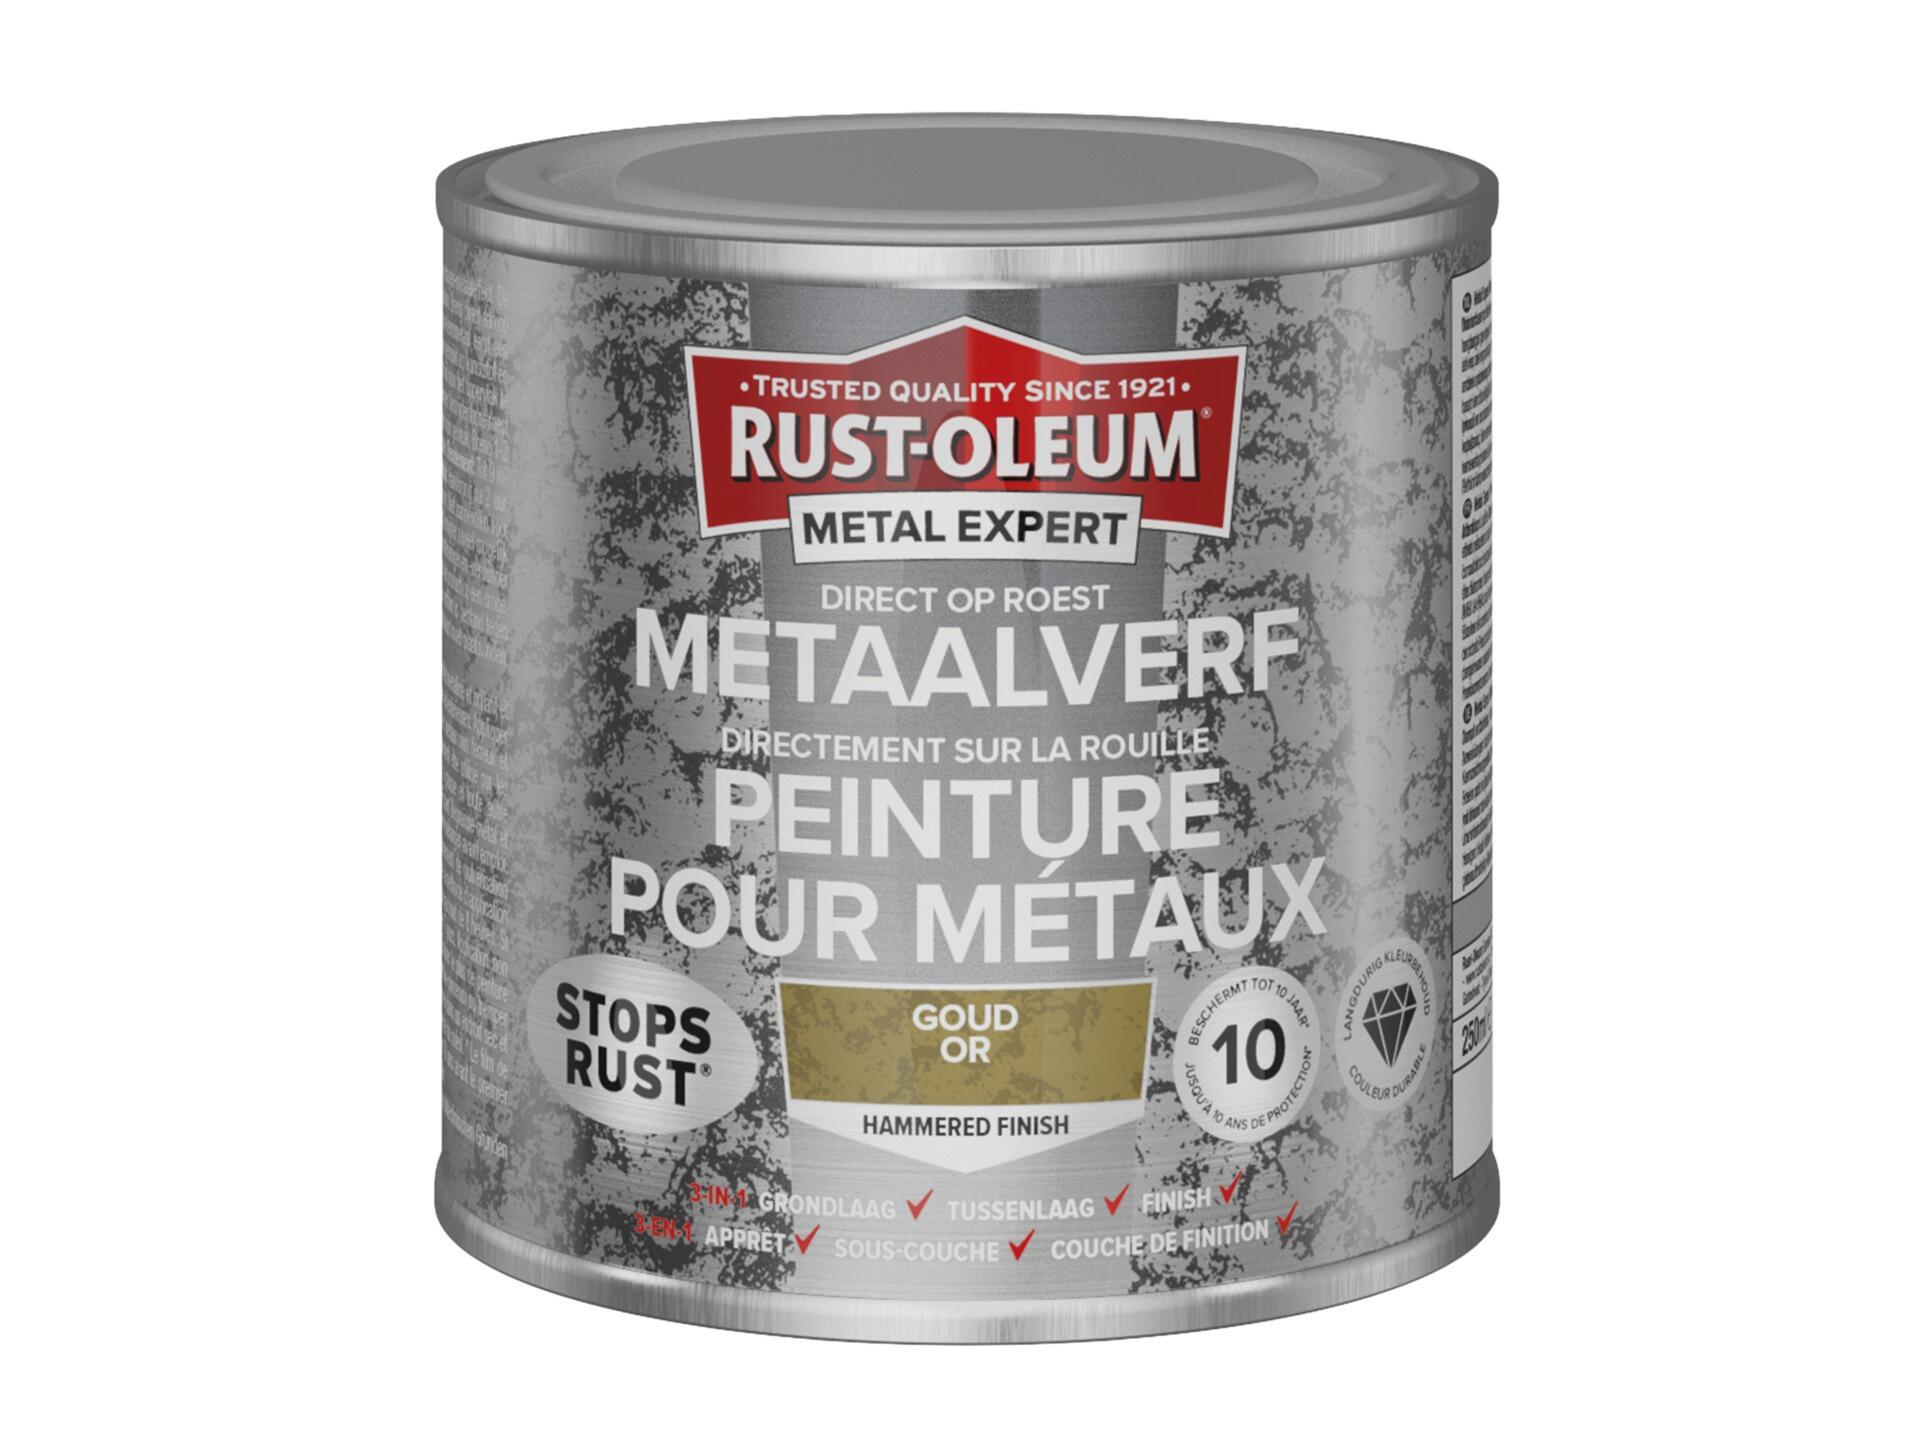 Rust-oleum Metal Expert peinture pour métaux martelé 250ml or